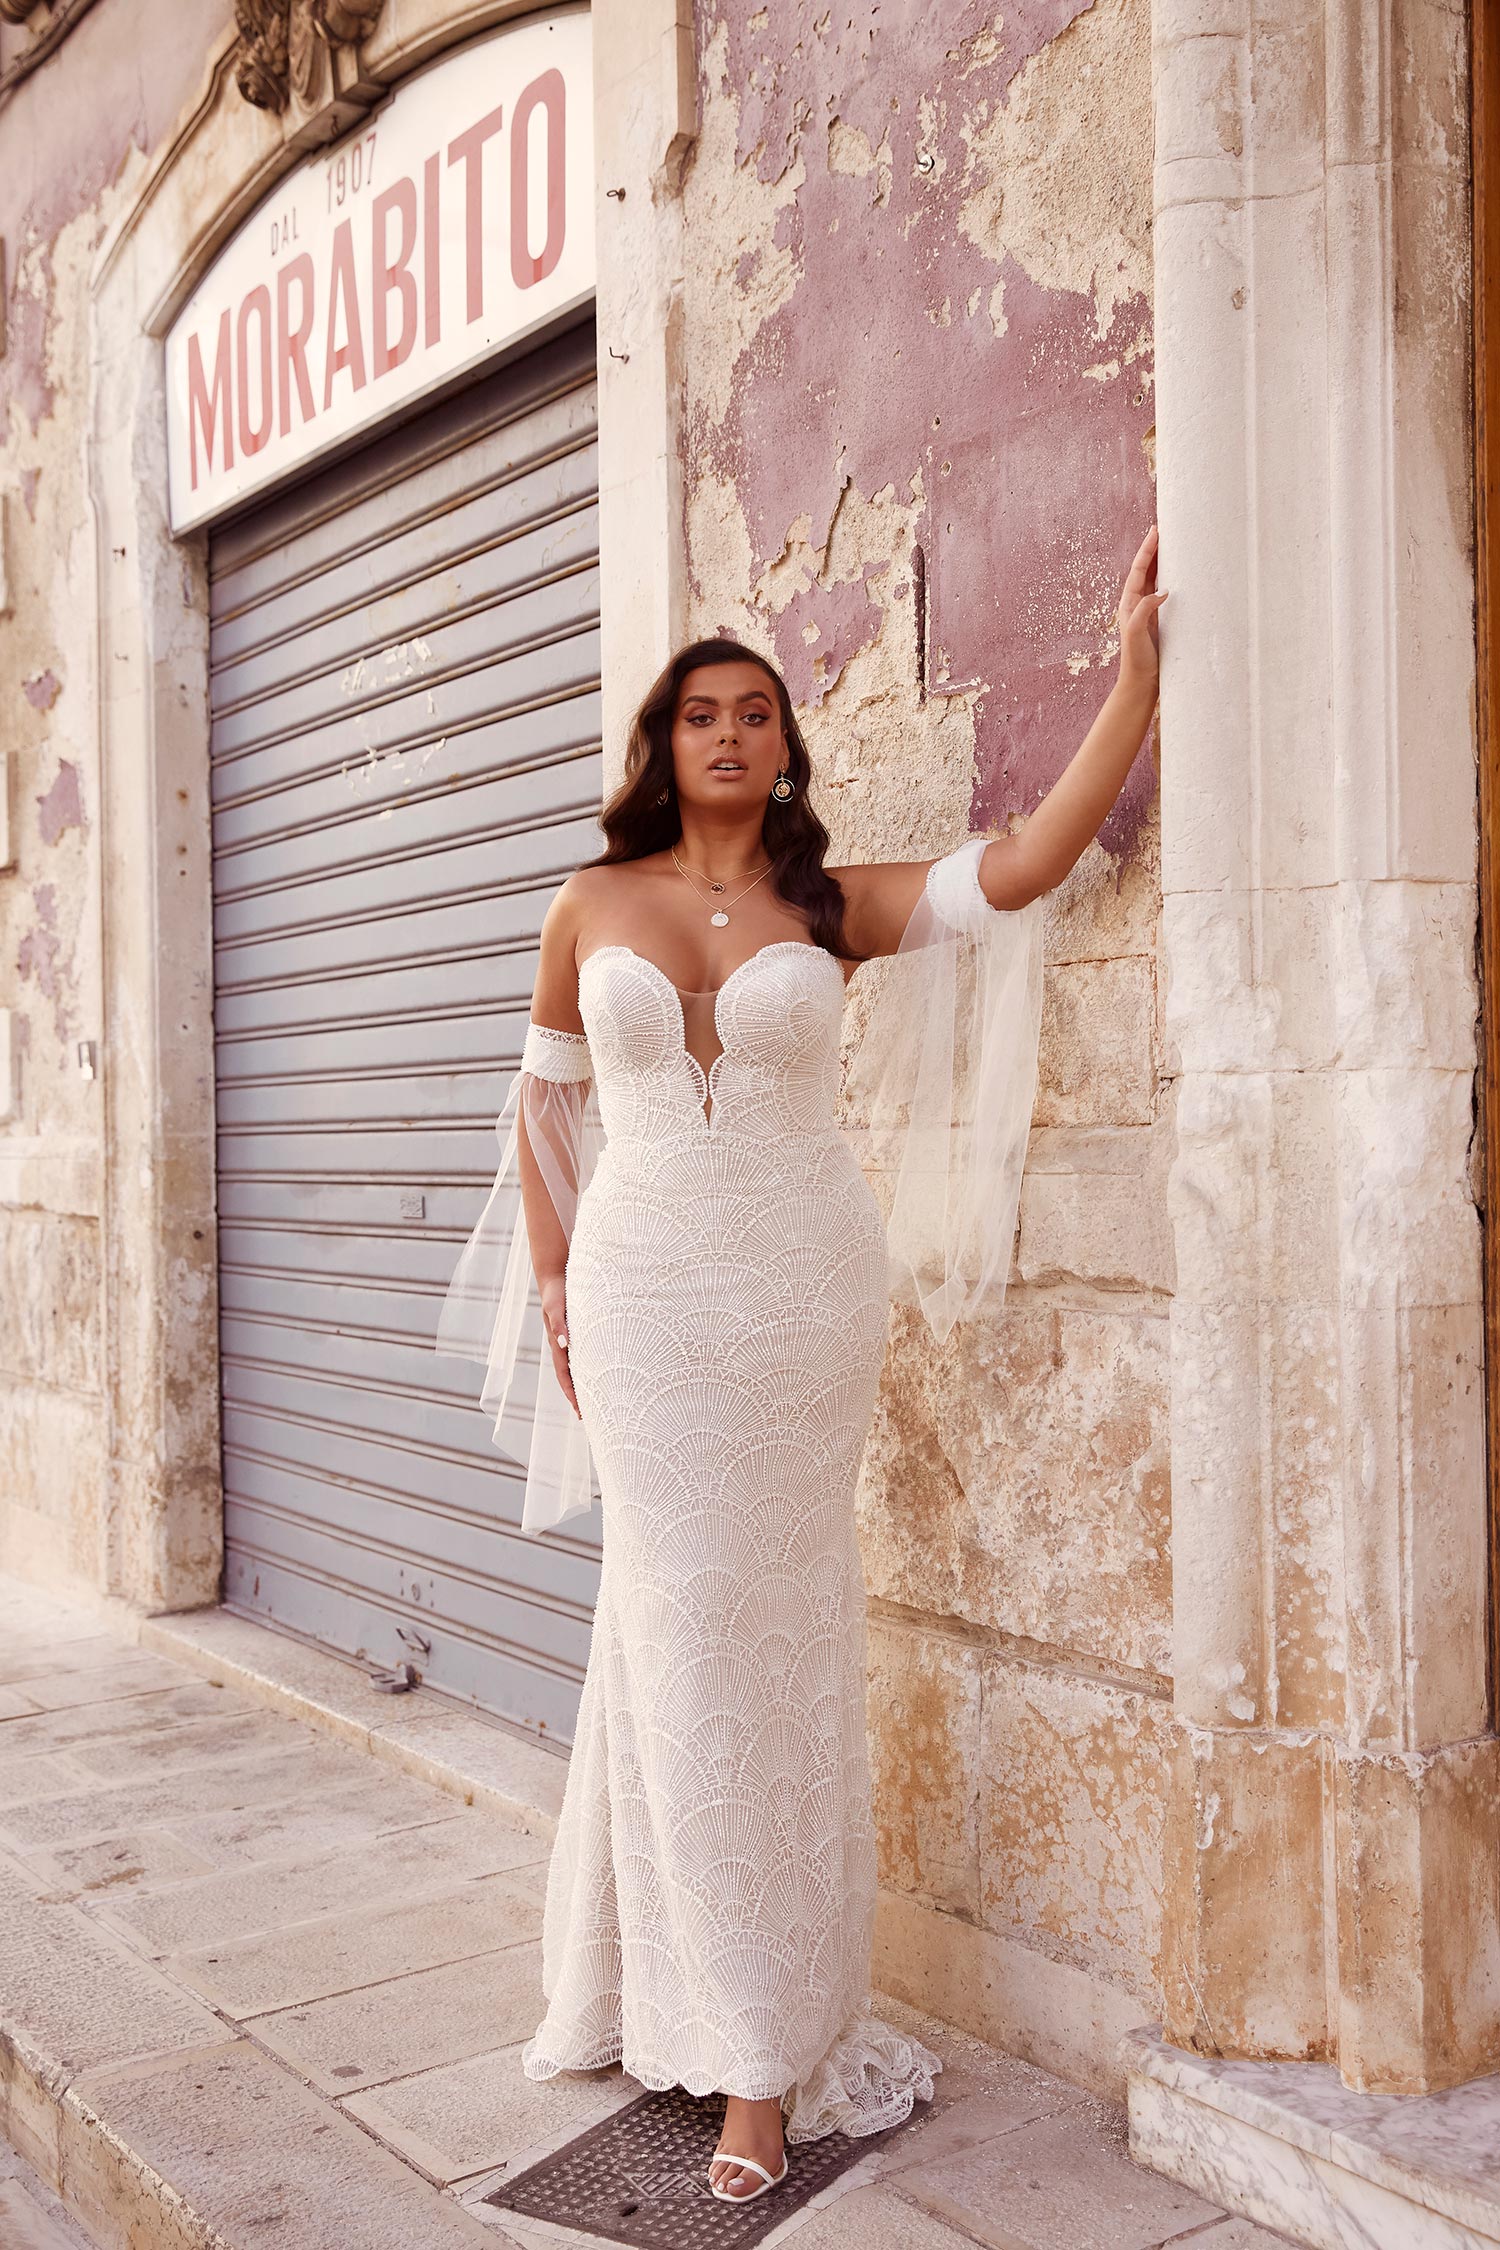 Marise Ml13023 Plunging Neck Full Length Beading With Detachable Sleeves Wedding Dress Madi Lane Bridal2